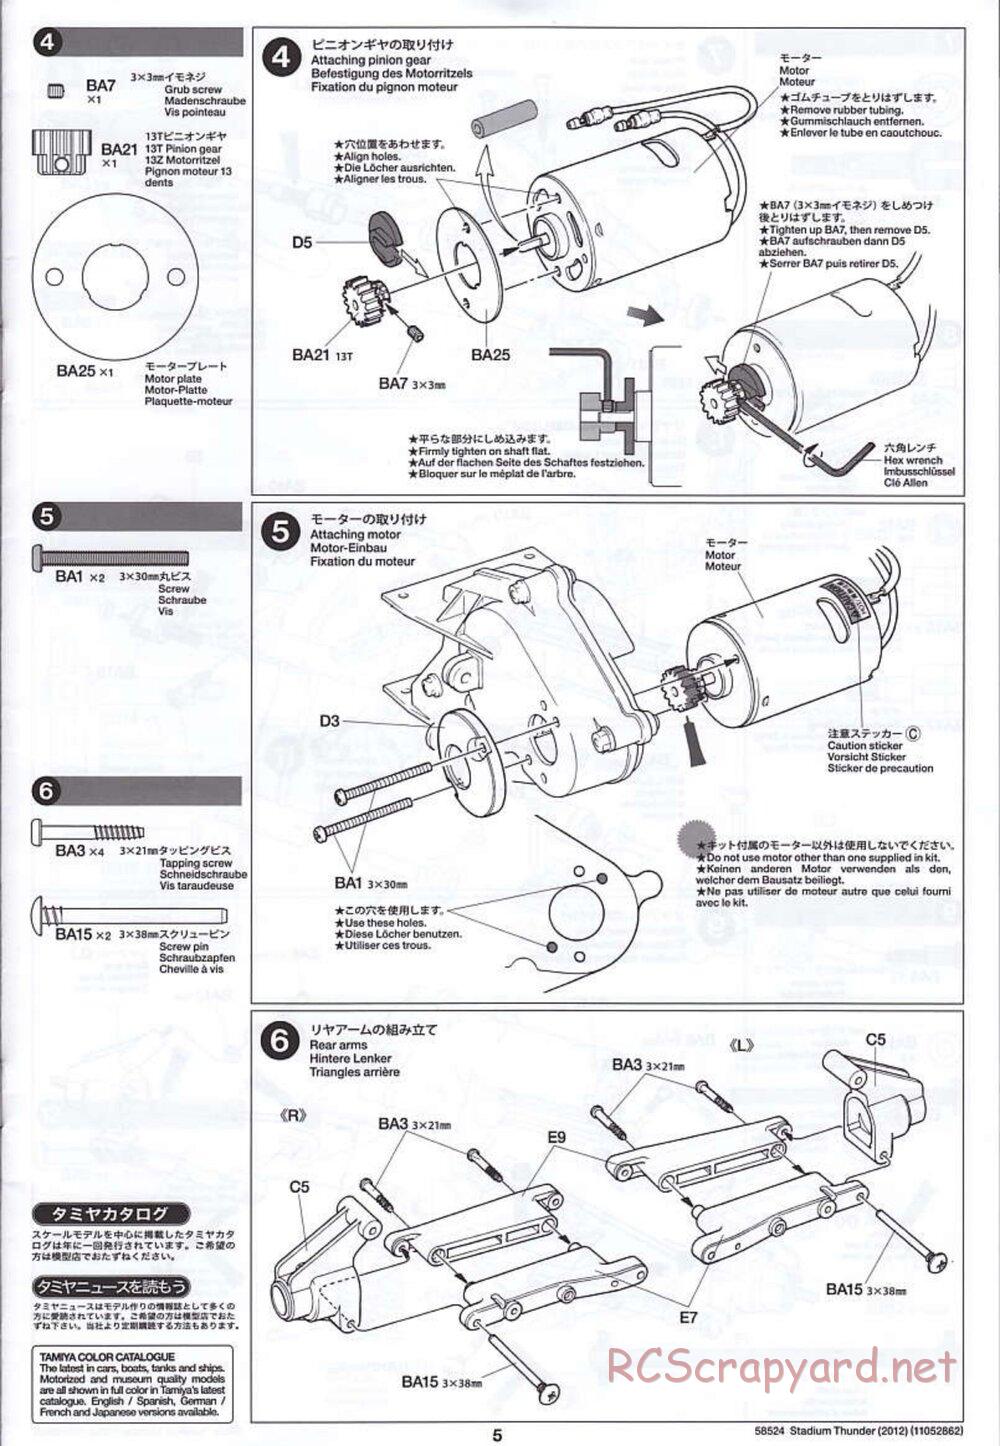 Tamiya - Stadium Thunder 2012 - FAL Chassis - Manual - Page 5